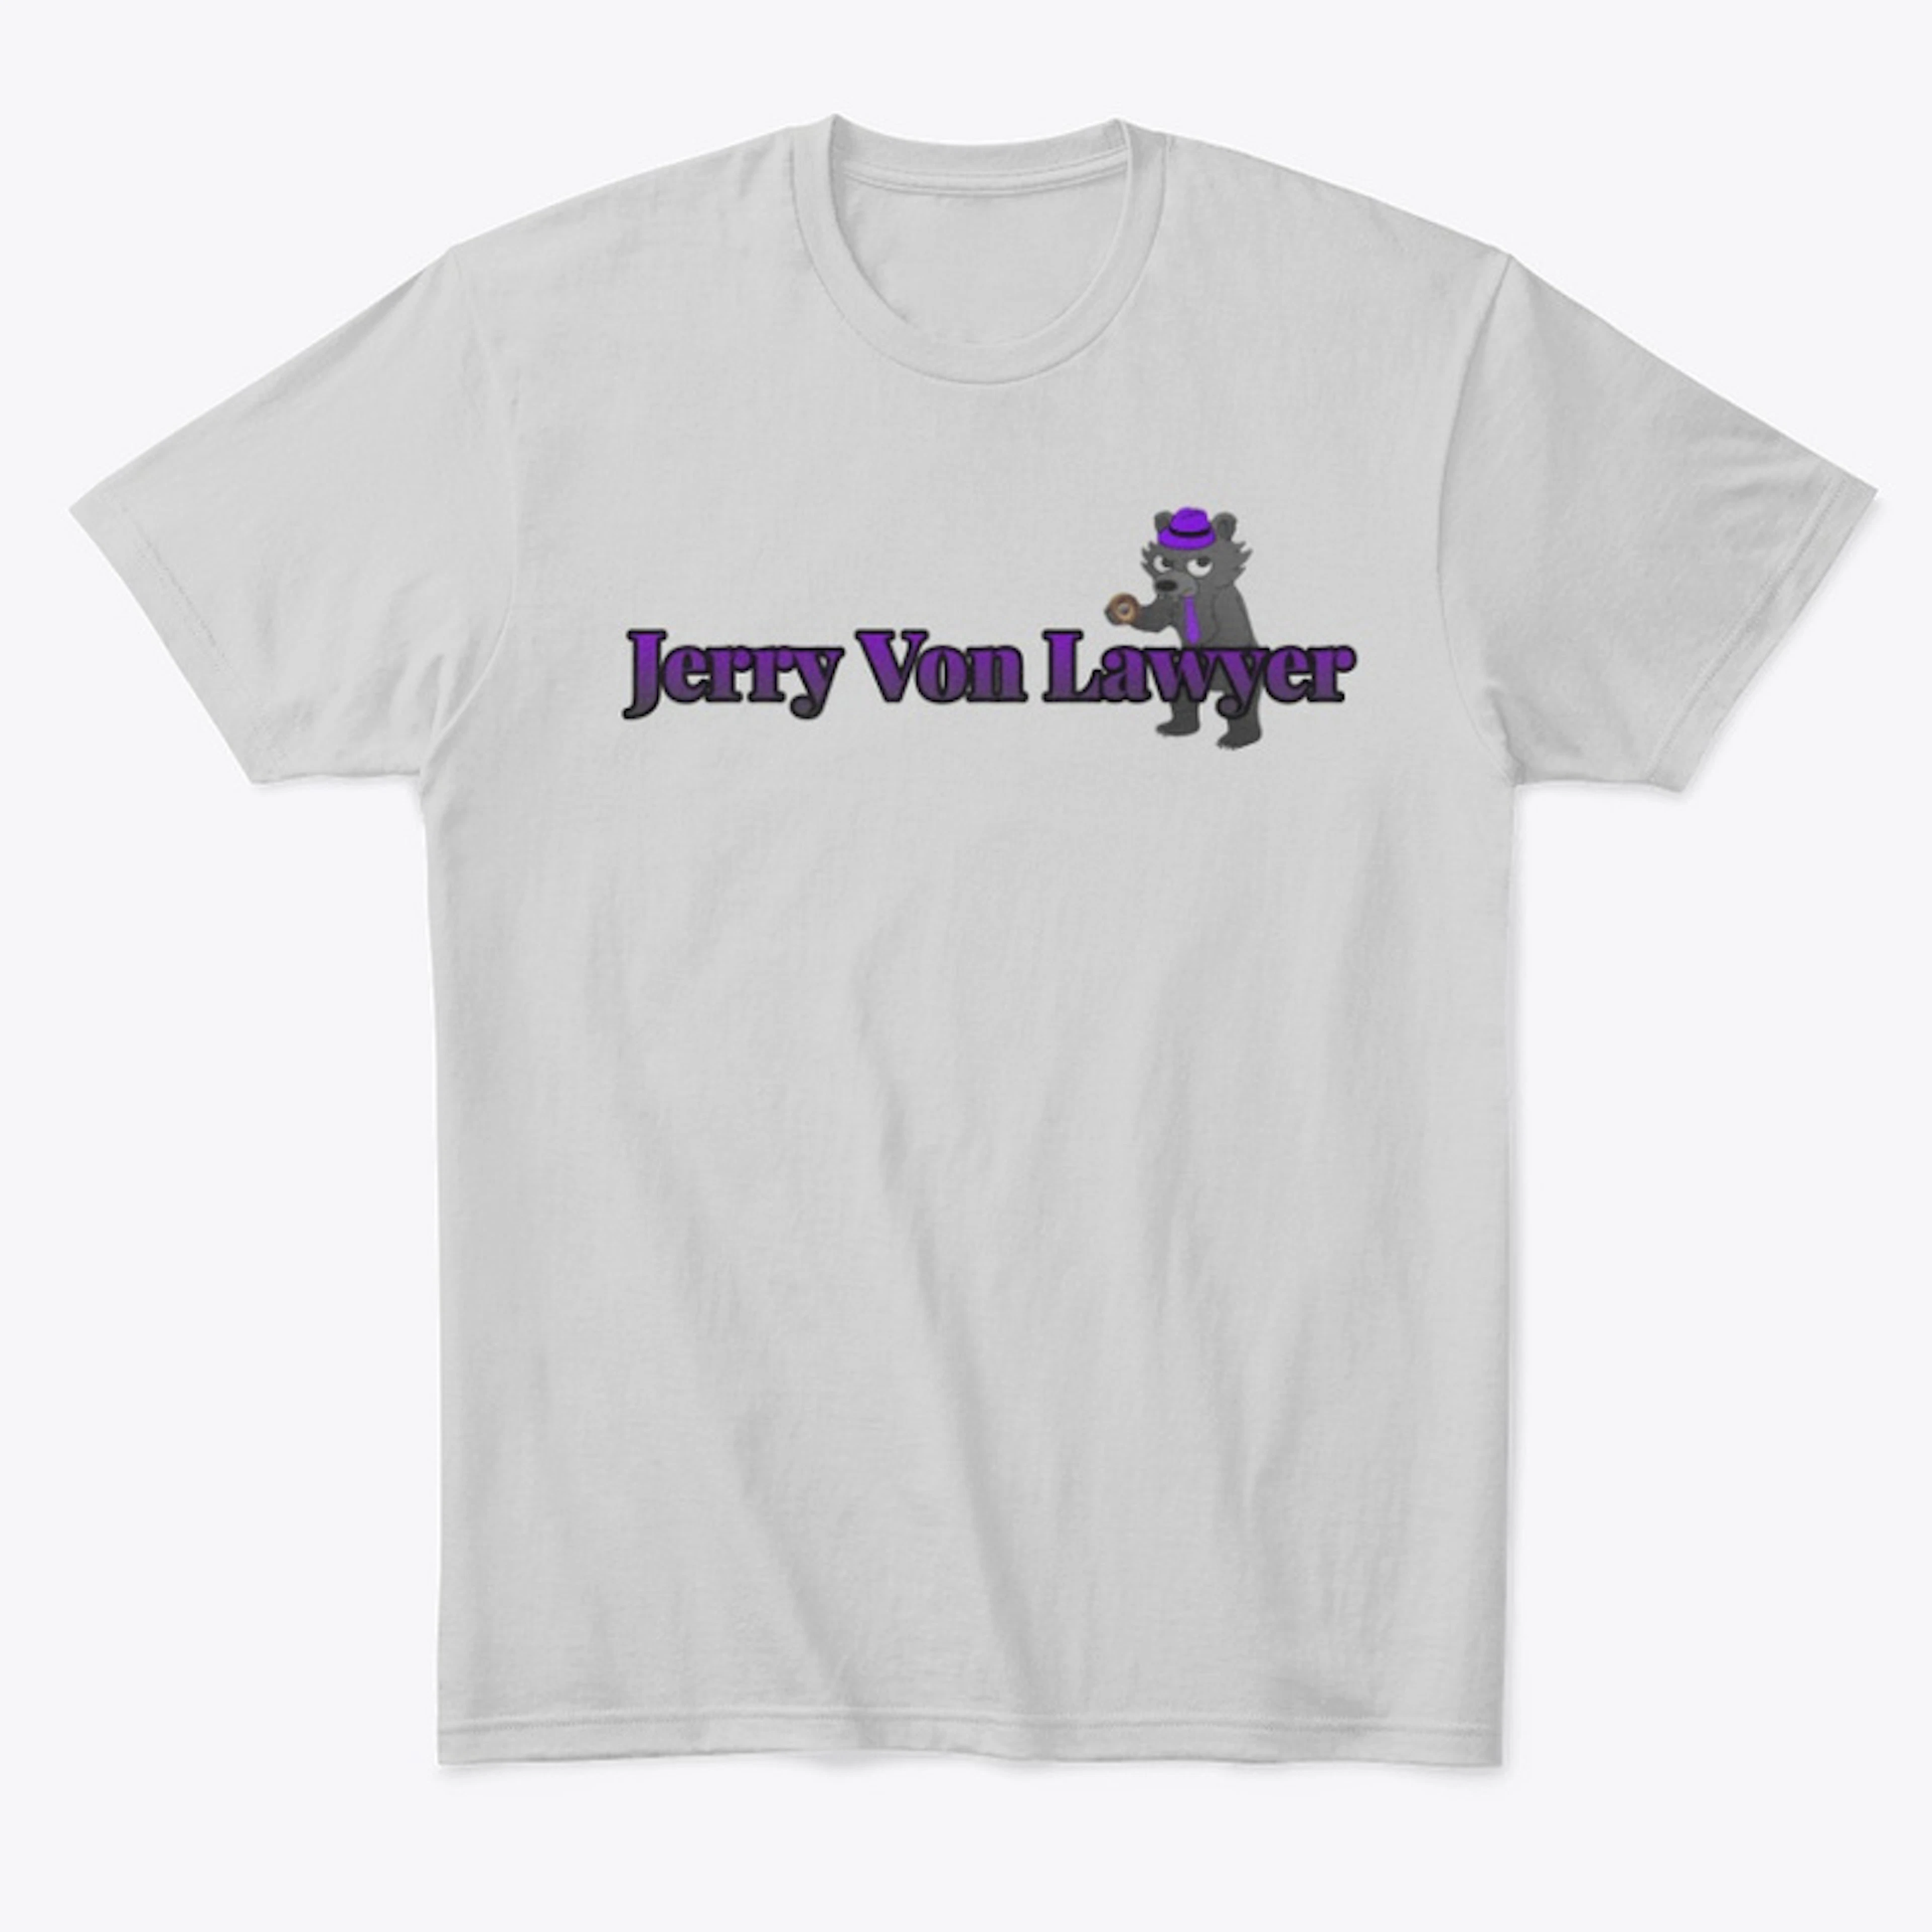 Jerry Von Lawyer Logo Design